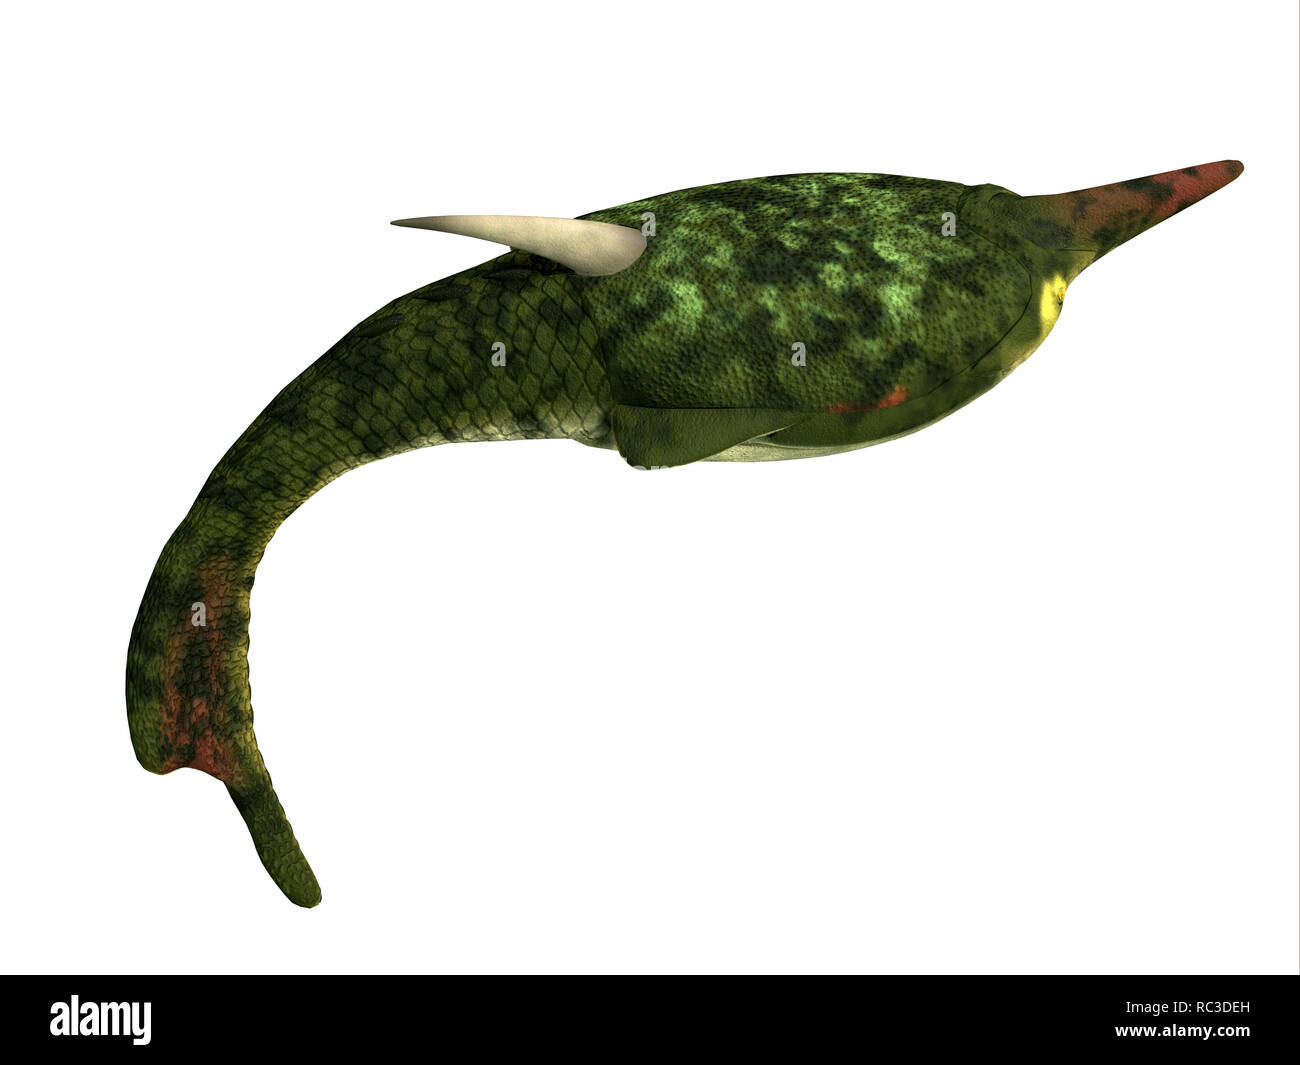 Pesce Pteraspis profilo laterale - Pteraspis era un primitivo jawless pesci che vivevano negli oceani del Periodo Devoniano. Foto Stock